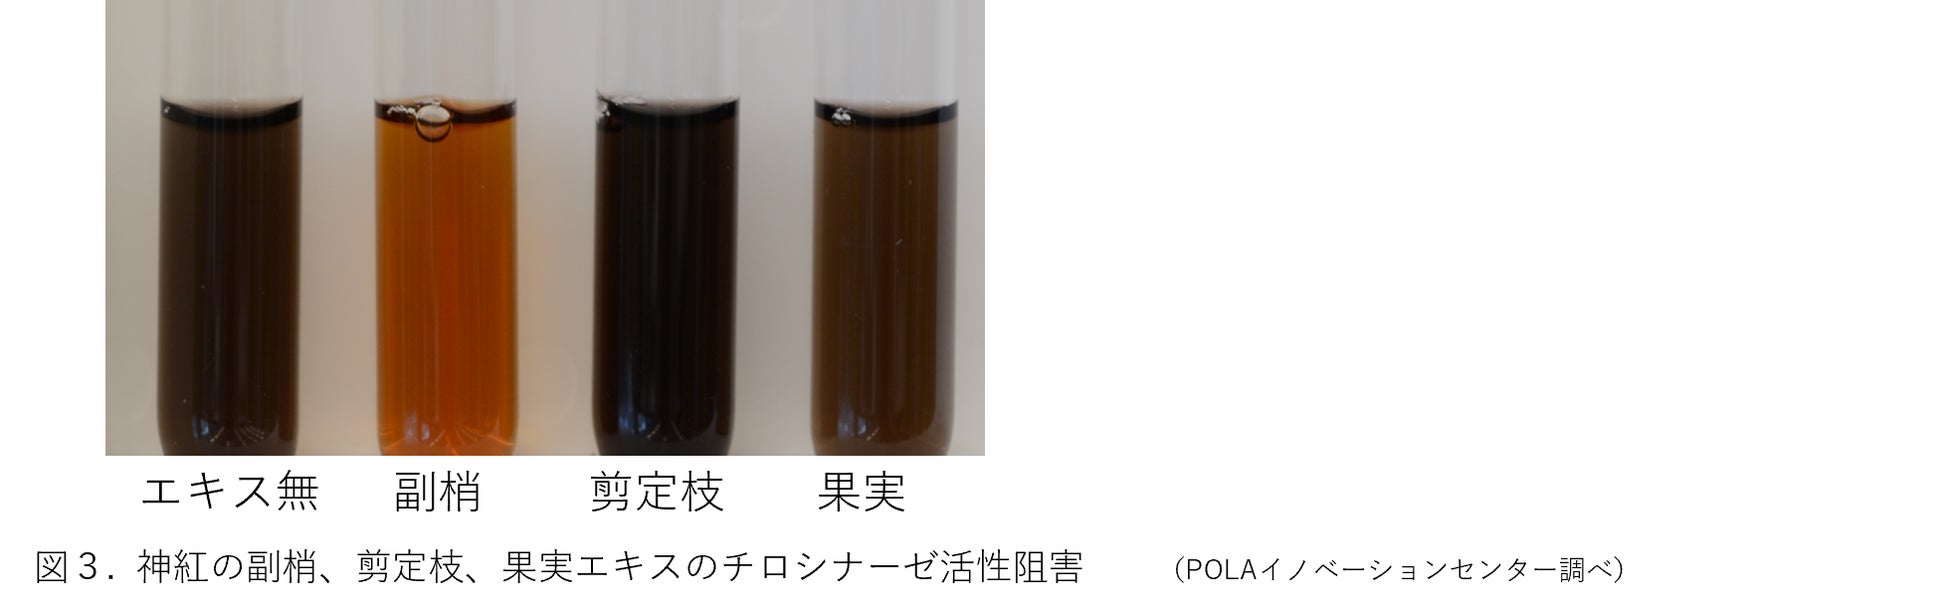 島根県産ブドウの未利用資源から新たな価値を創造 「神紅」の副梢エキスに抗酸化とメラニン抑制効果を発見のサブ画像3